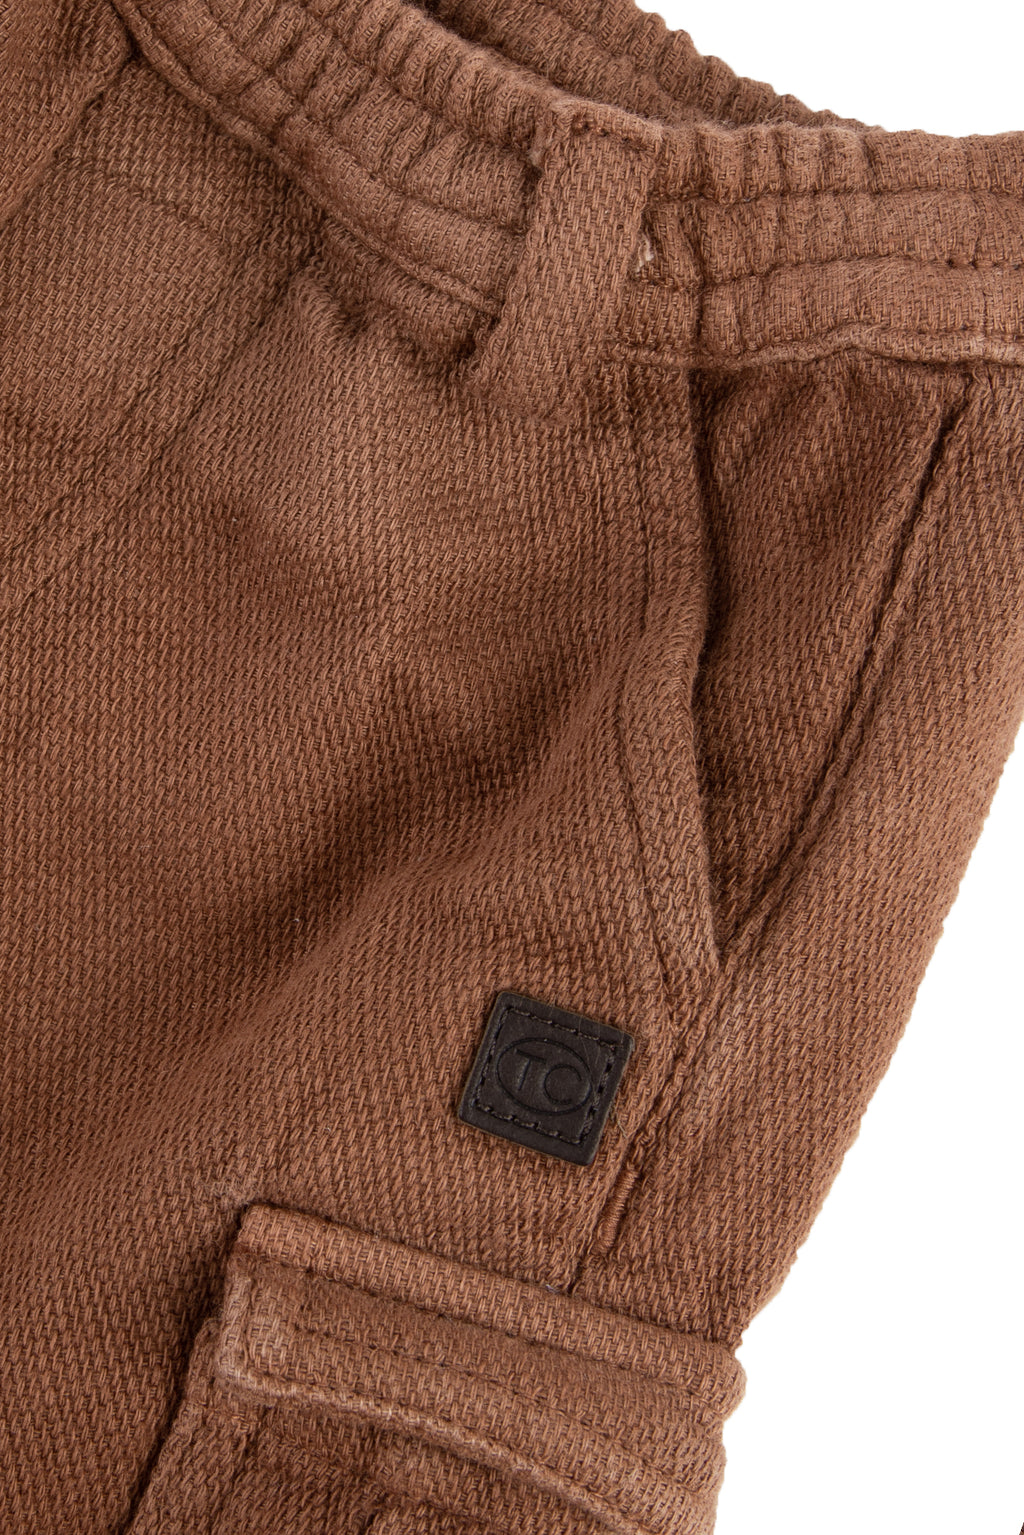 Pantalon - Cargo marrón Lino